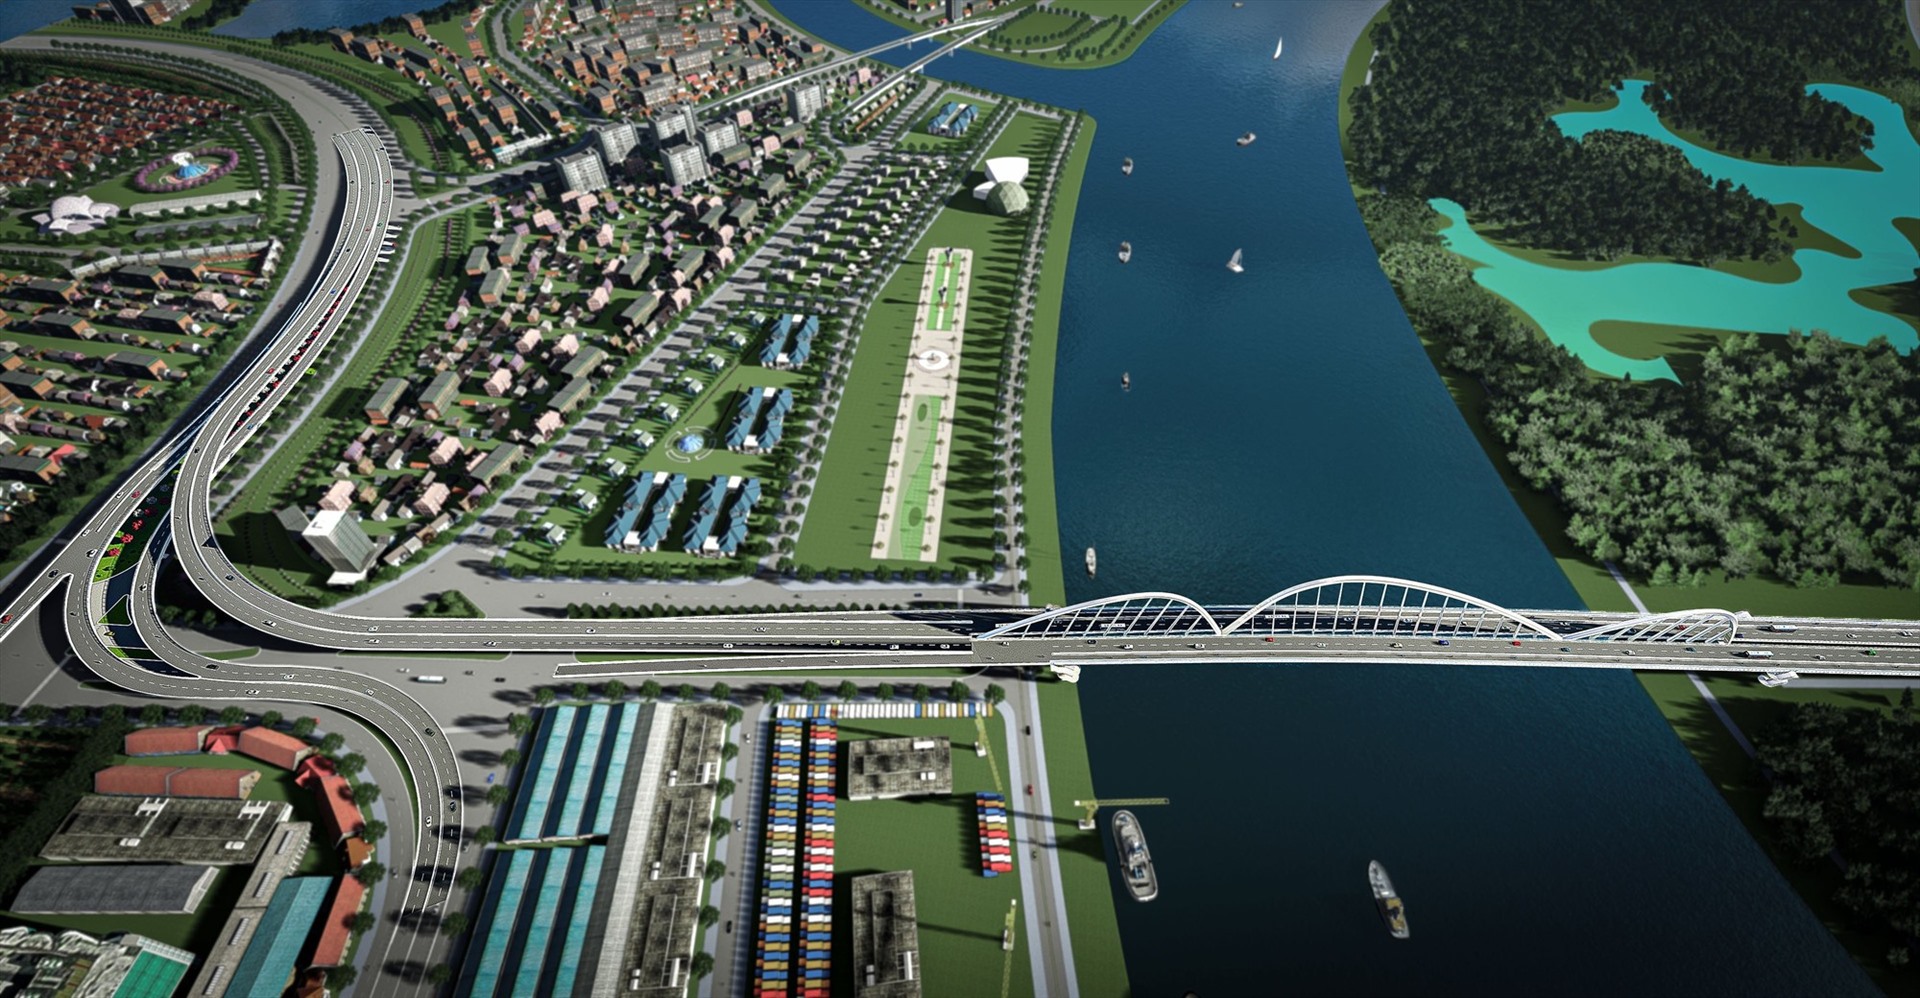 Cầu Thủ thiêm 4 nối Khu đô thị mới Thủ Thiêm (Thành phố Thủ Đức) sang Quận 7, tổng vốn gần 5.000 tỉ đồng.